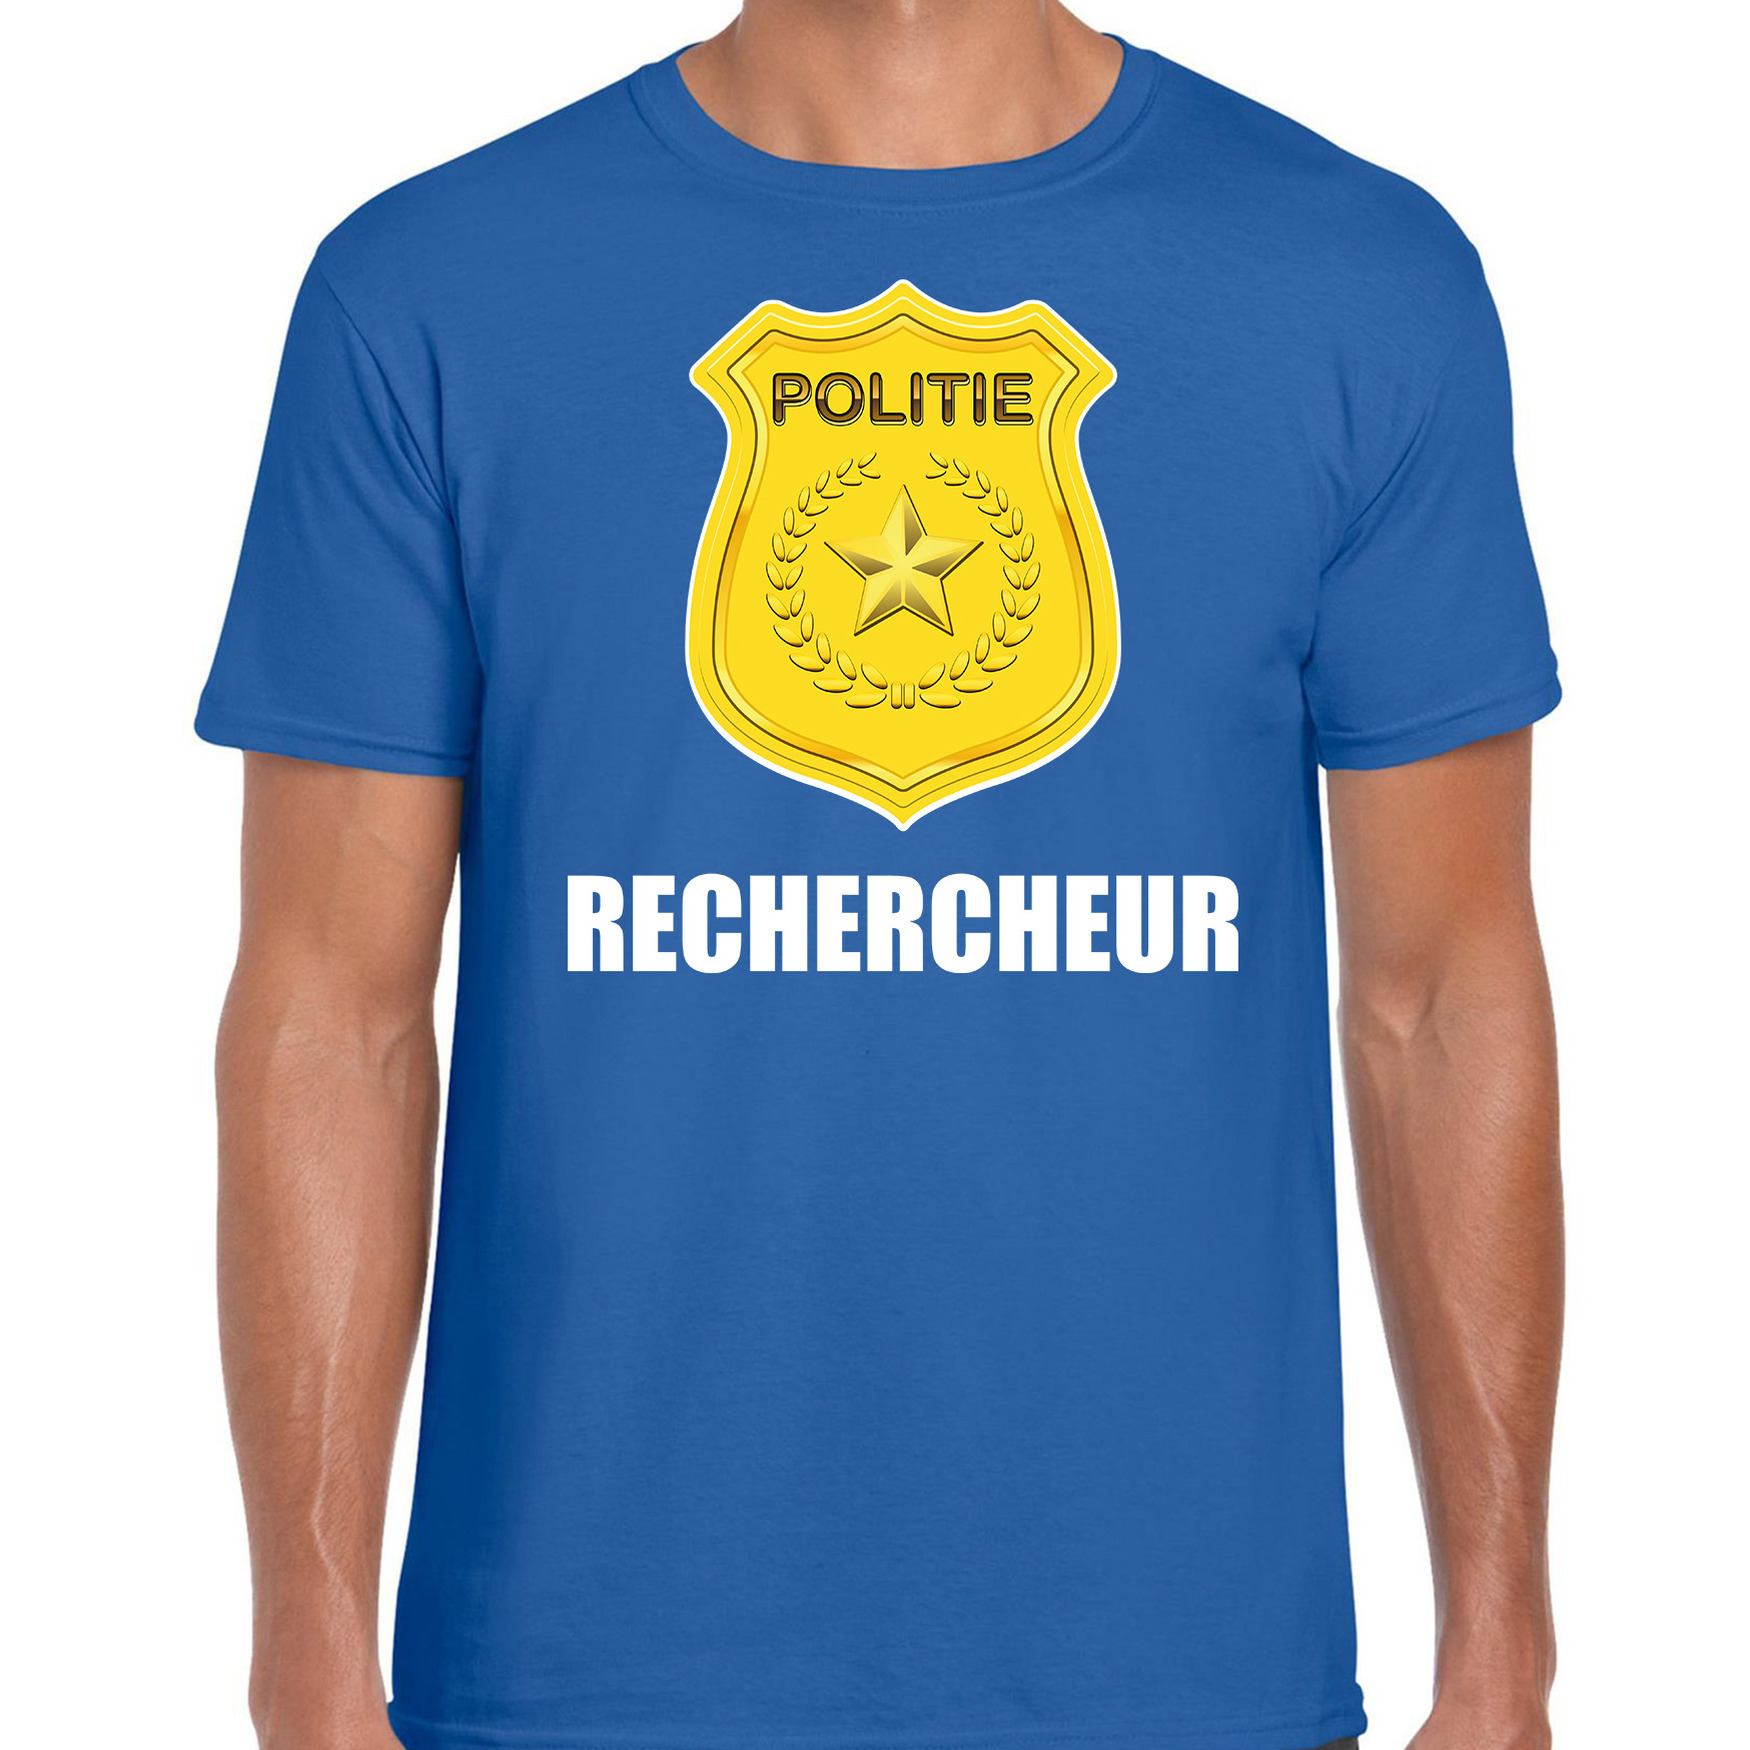 Carnaval shirt-outfit politie embleem rechercheur blauw voor heren